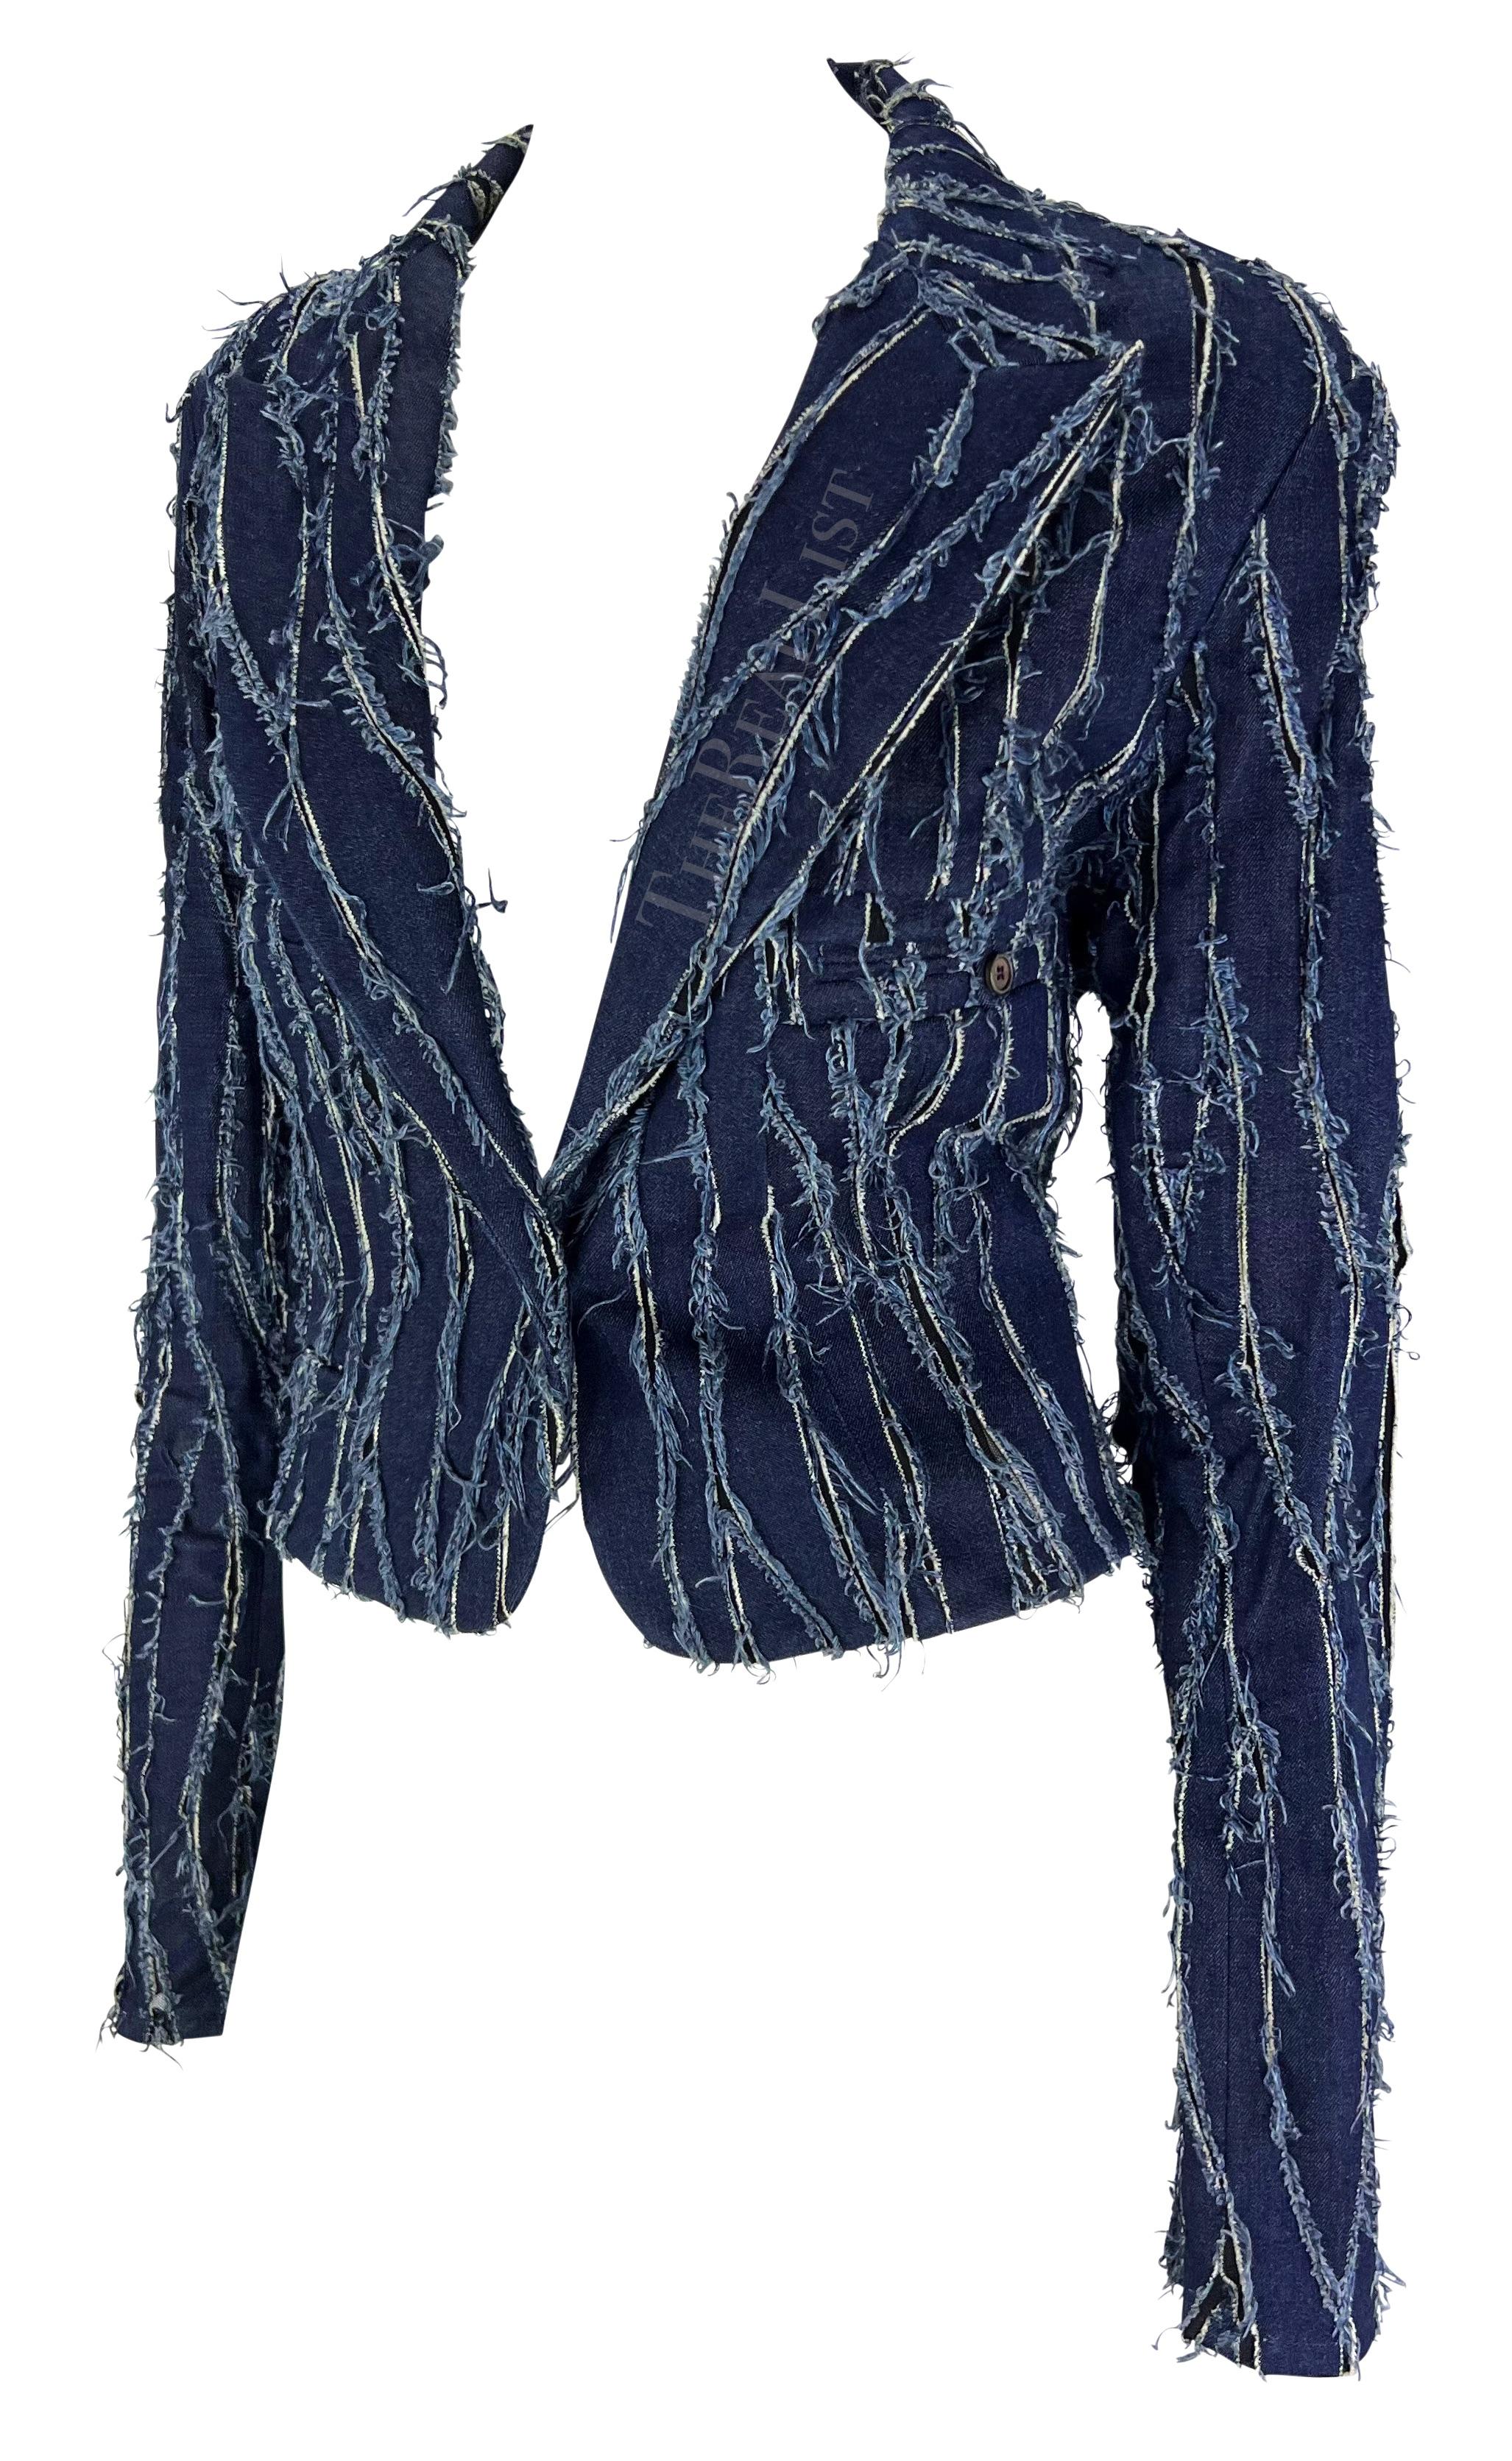 Nous vous présentons un incroyable blazer en denim Christian Dior vieilli, conçu par John Galliano. Issu de la collection automne/hiver 2001, ce blazer court chic est composé d'empiècements en denim usé placés sur un tissu en maille qui s'insère de